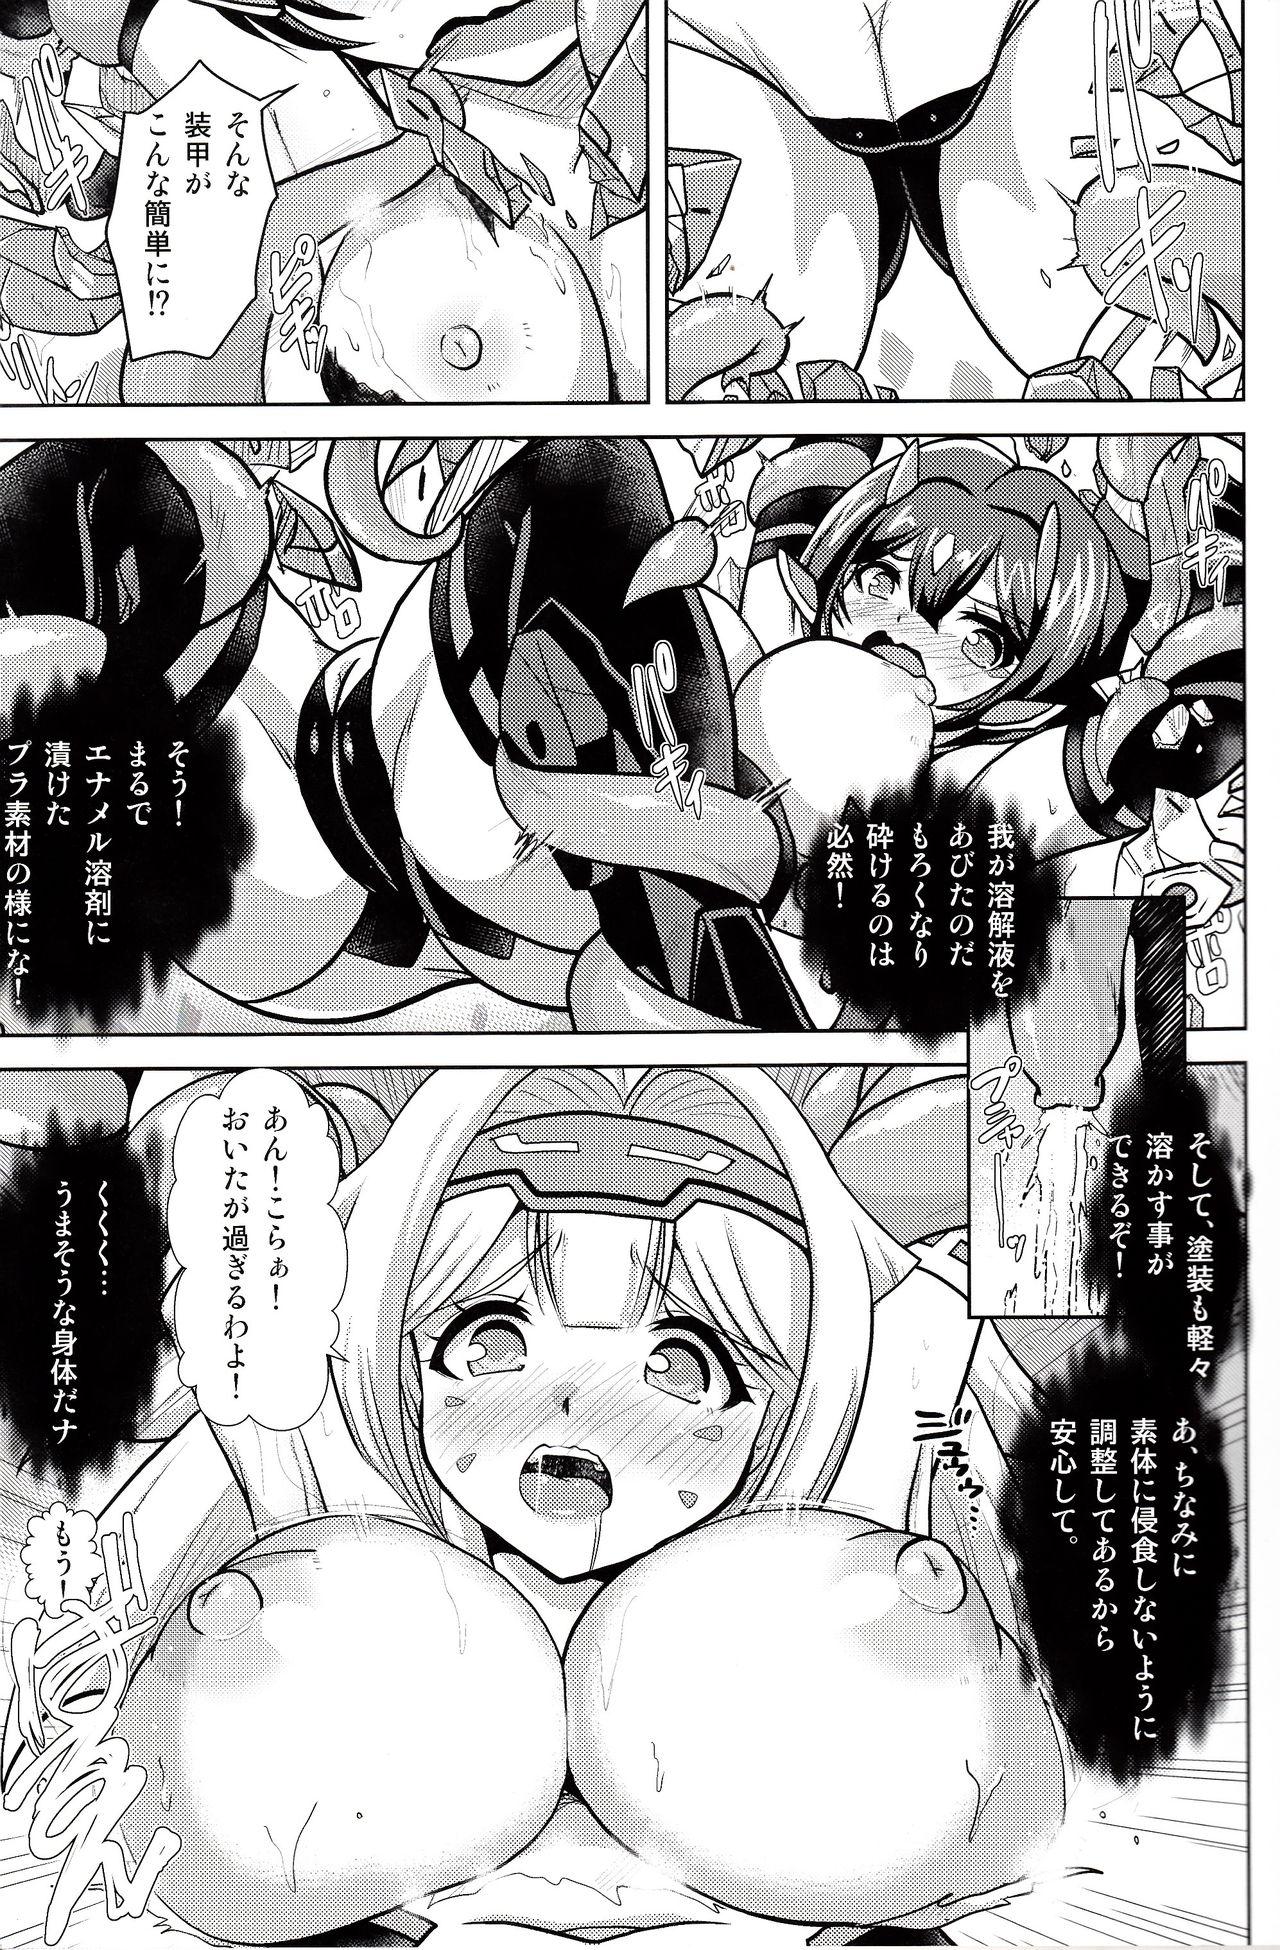 Strange Shutoshoku - Megami device Love Making - Page 10